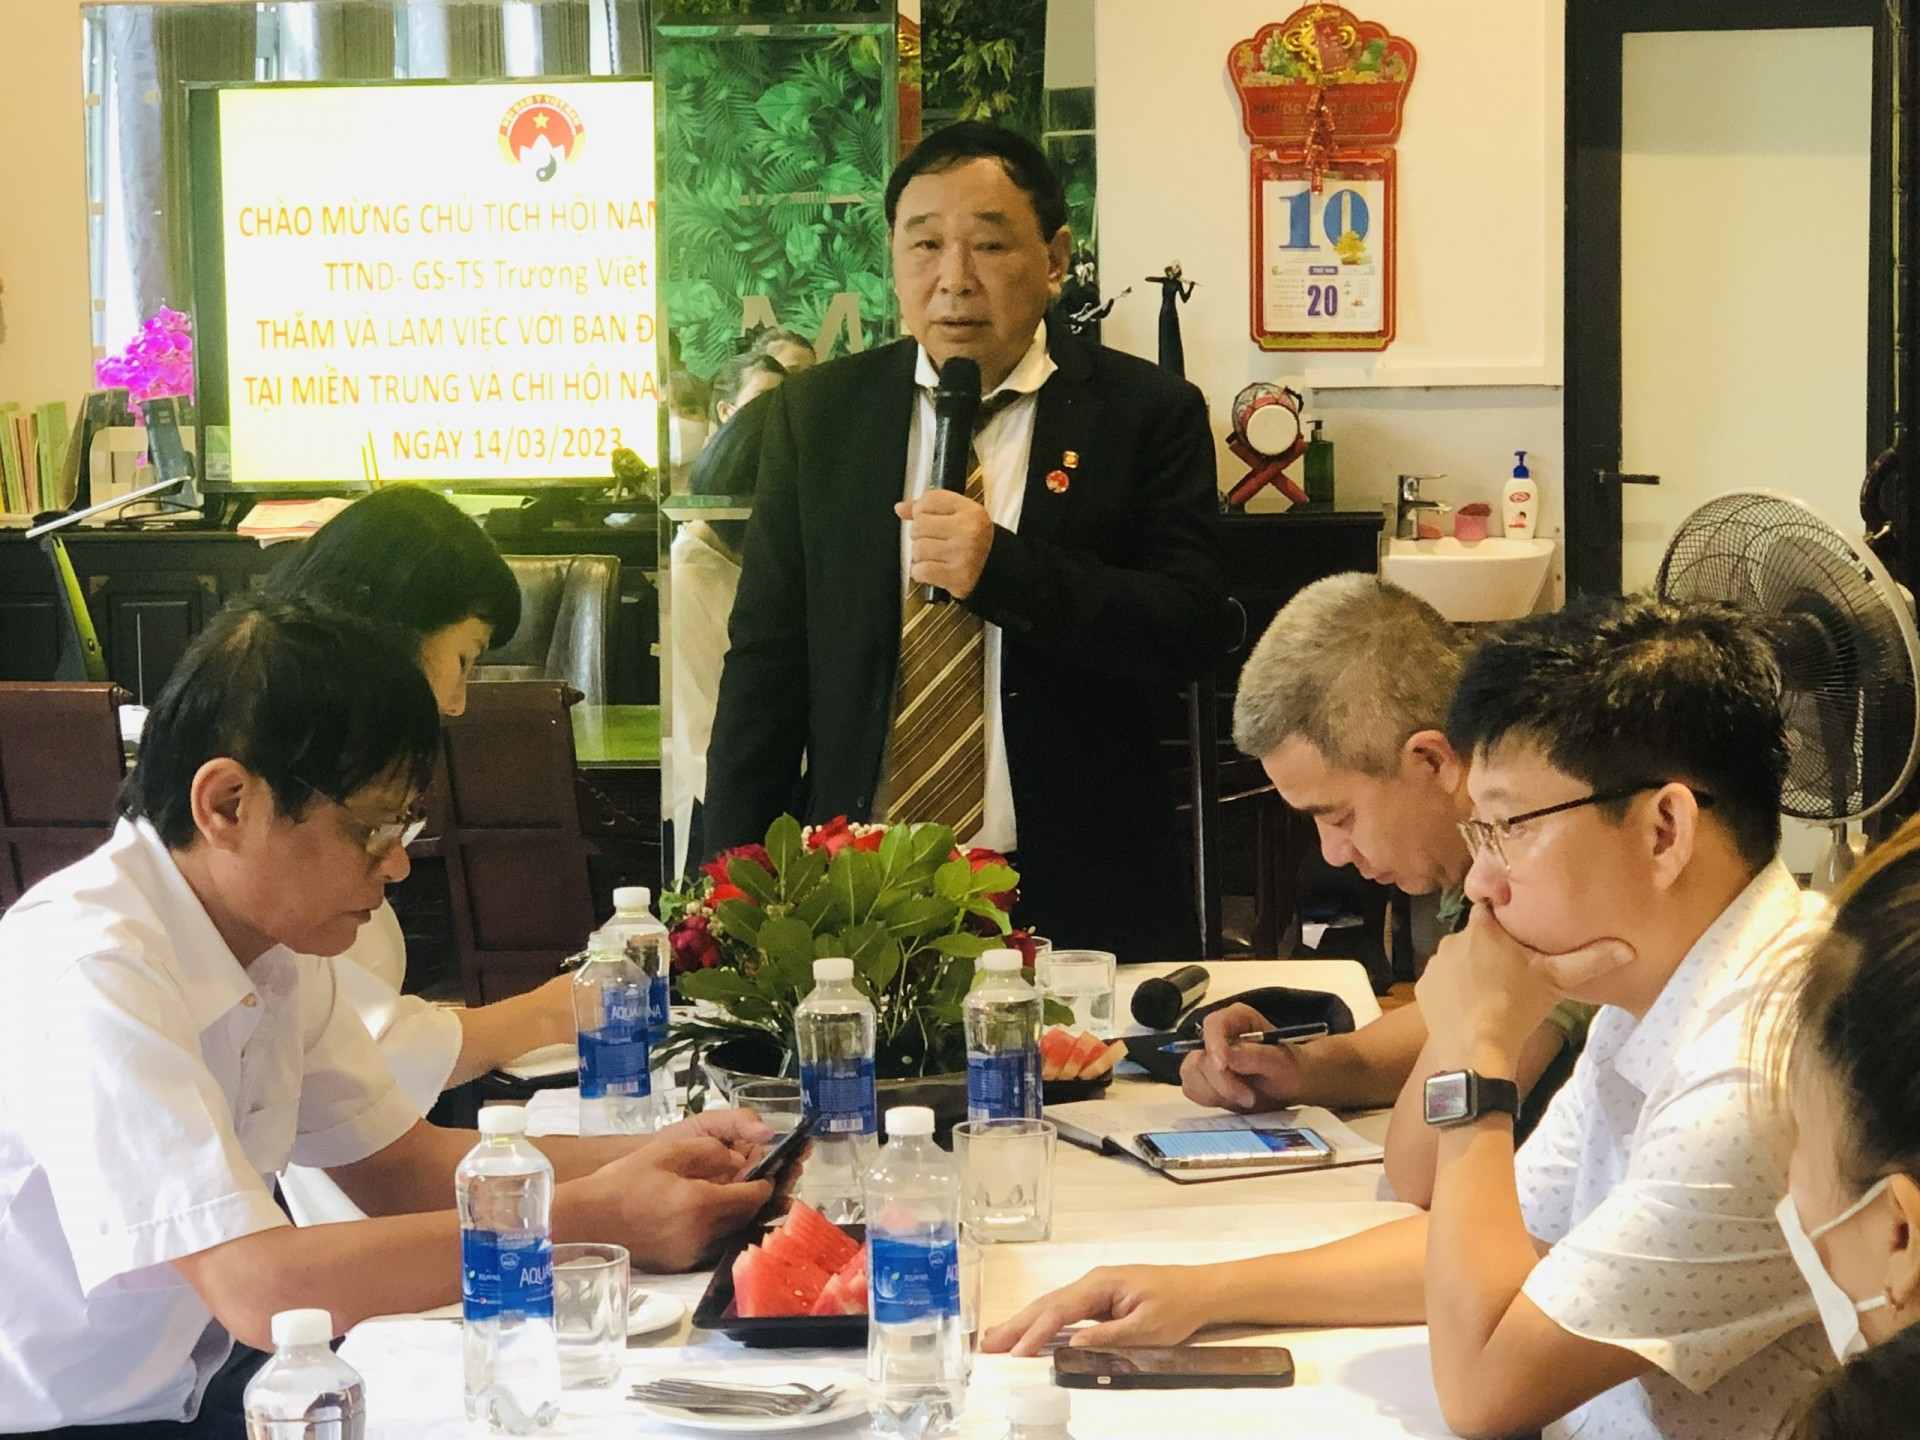 Chủ tịch Hội Nam y Việt Nam thăm và làm việc tại Đà Nẵng